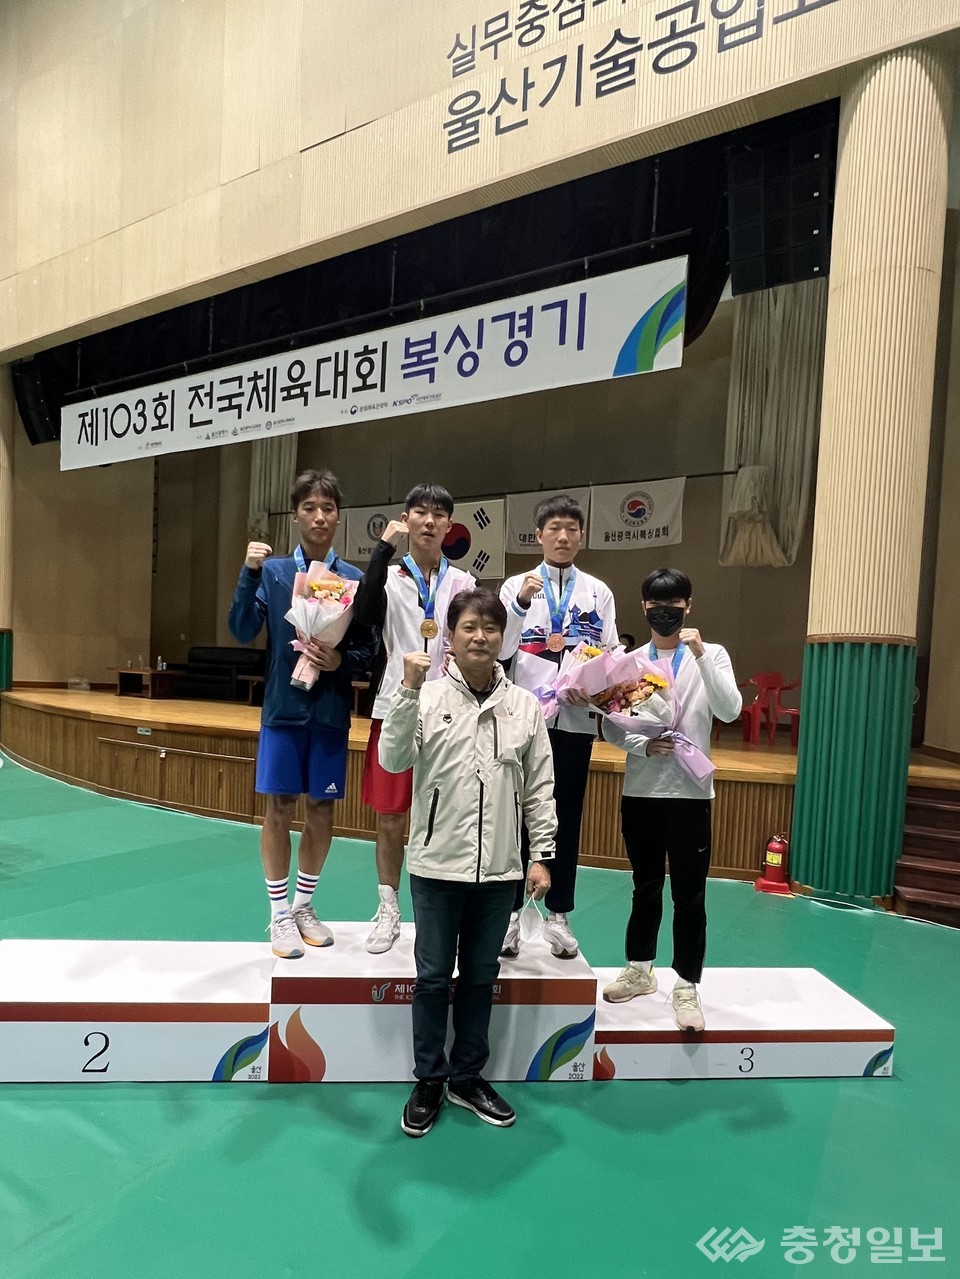 ▲ 남고 복싱 금메달, 대전체고 3 박종성